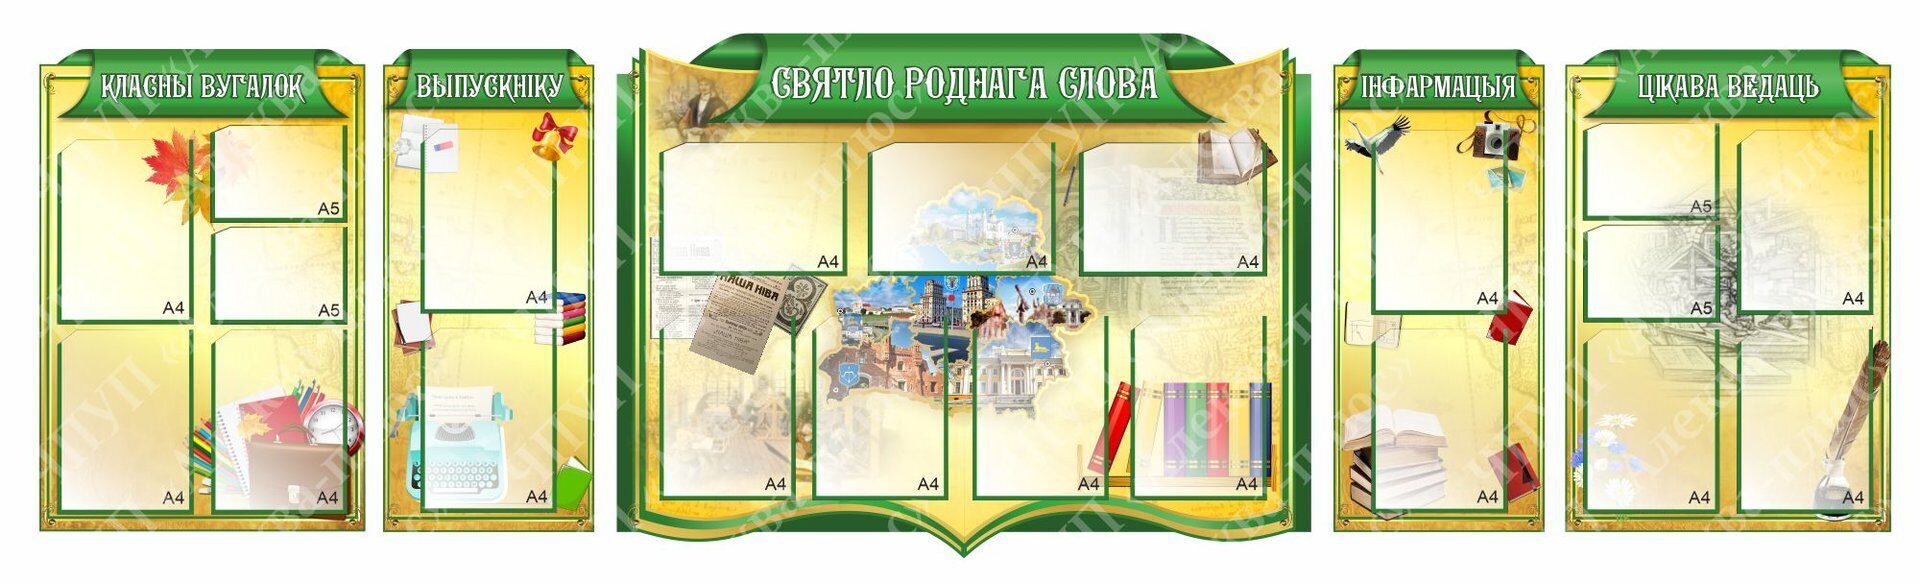 1486 Белорусский язык и литература, русский язык, информационный, классный уголок